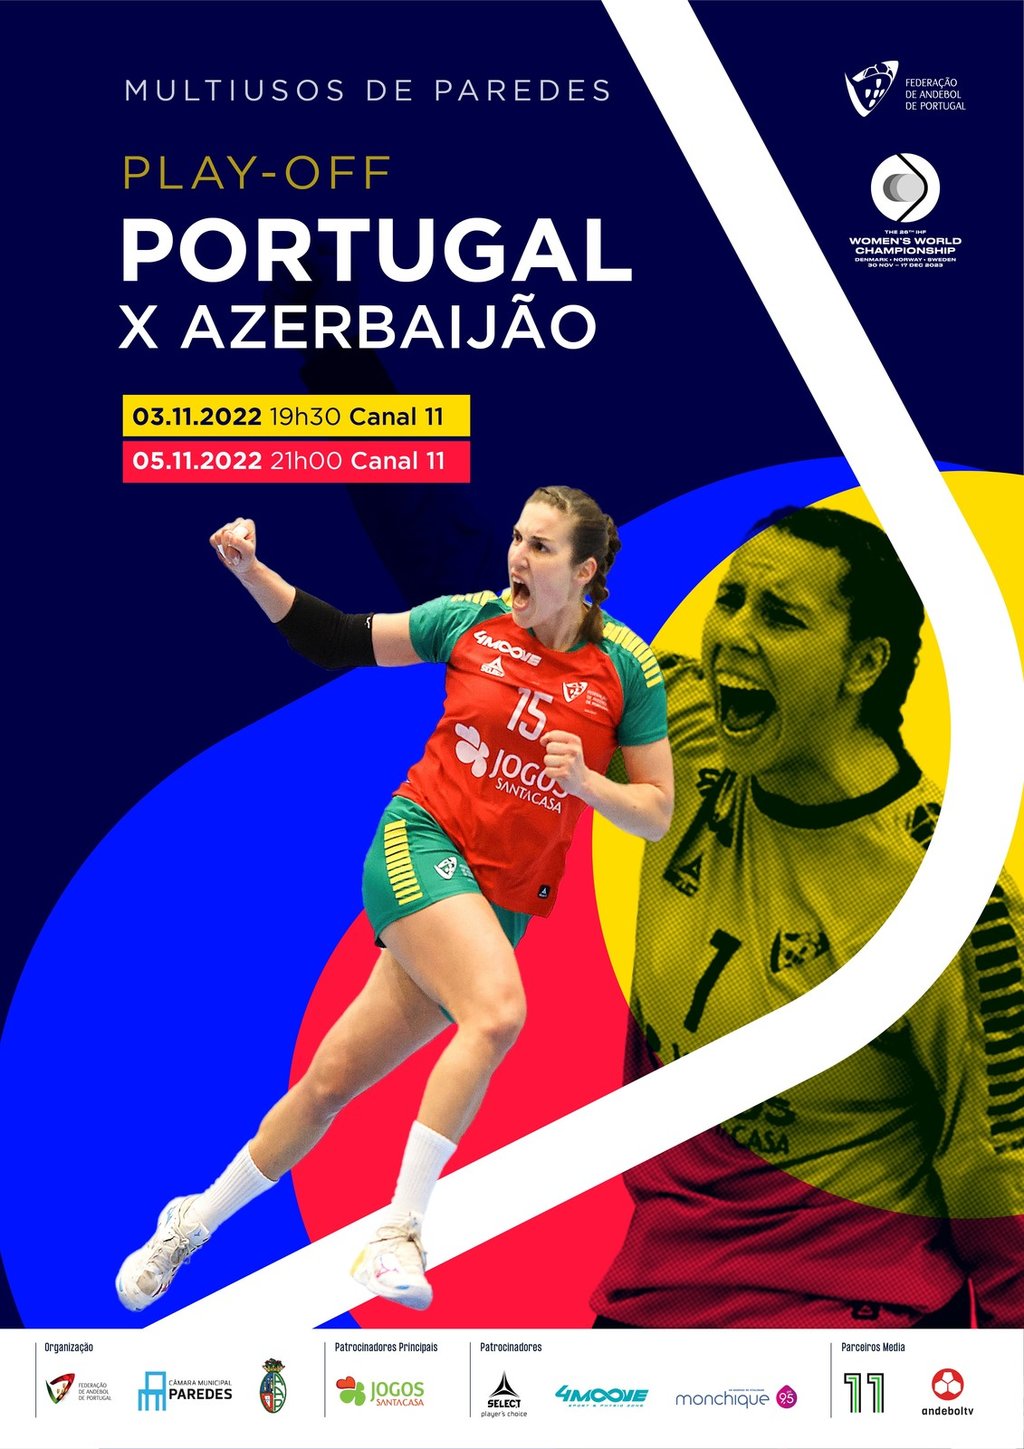 Jogo de Play-Off para o Campeonato Mundial Feminino de Andebol – Portugal x Azerbaijão